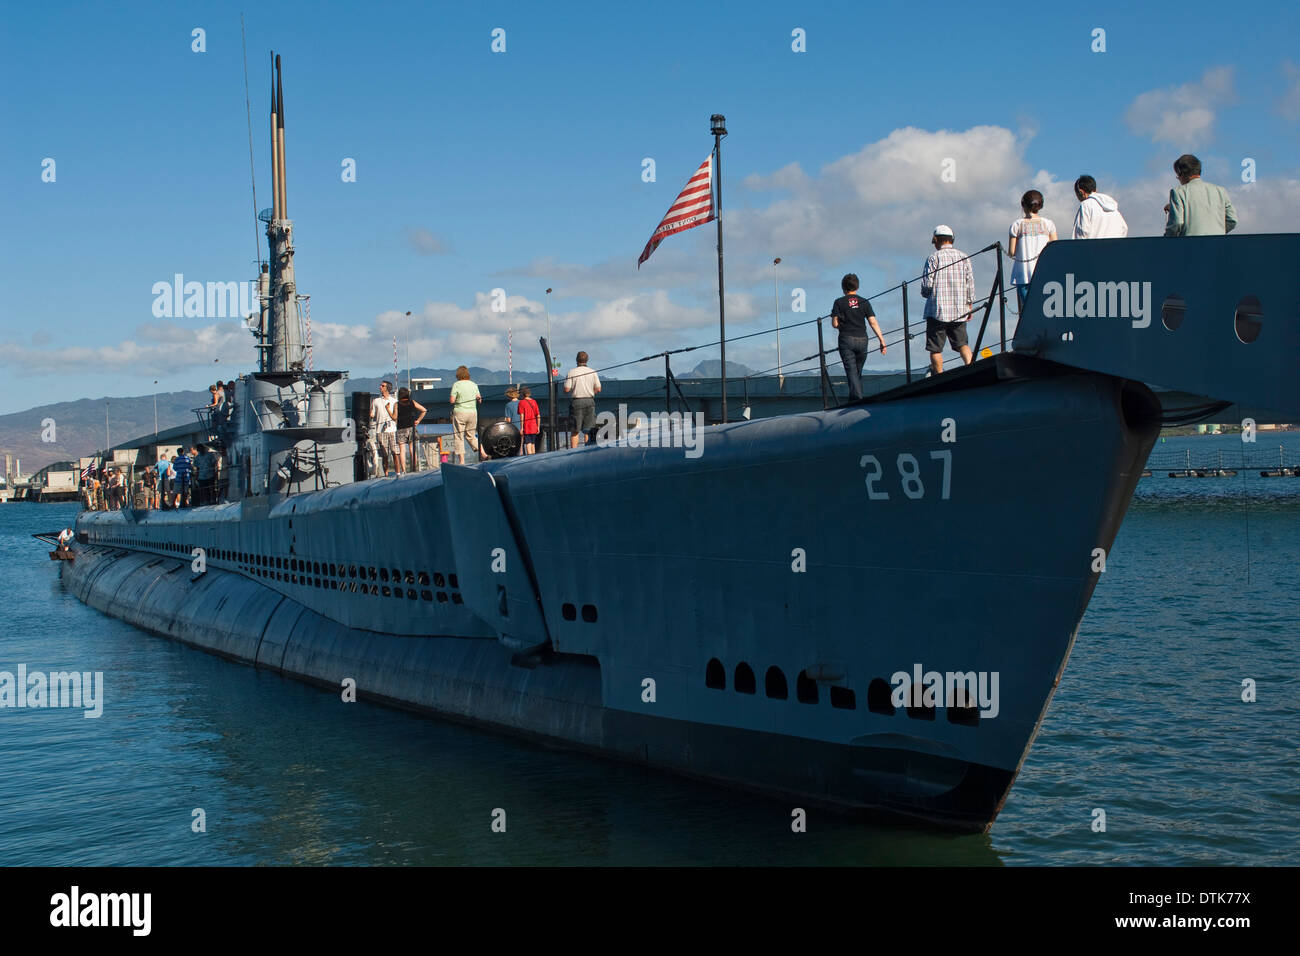 I turisti a bordo della USS Bowfin Submarine, Pearl Harbor, Oahu, Hawaii Foto Stock